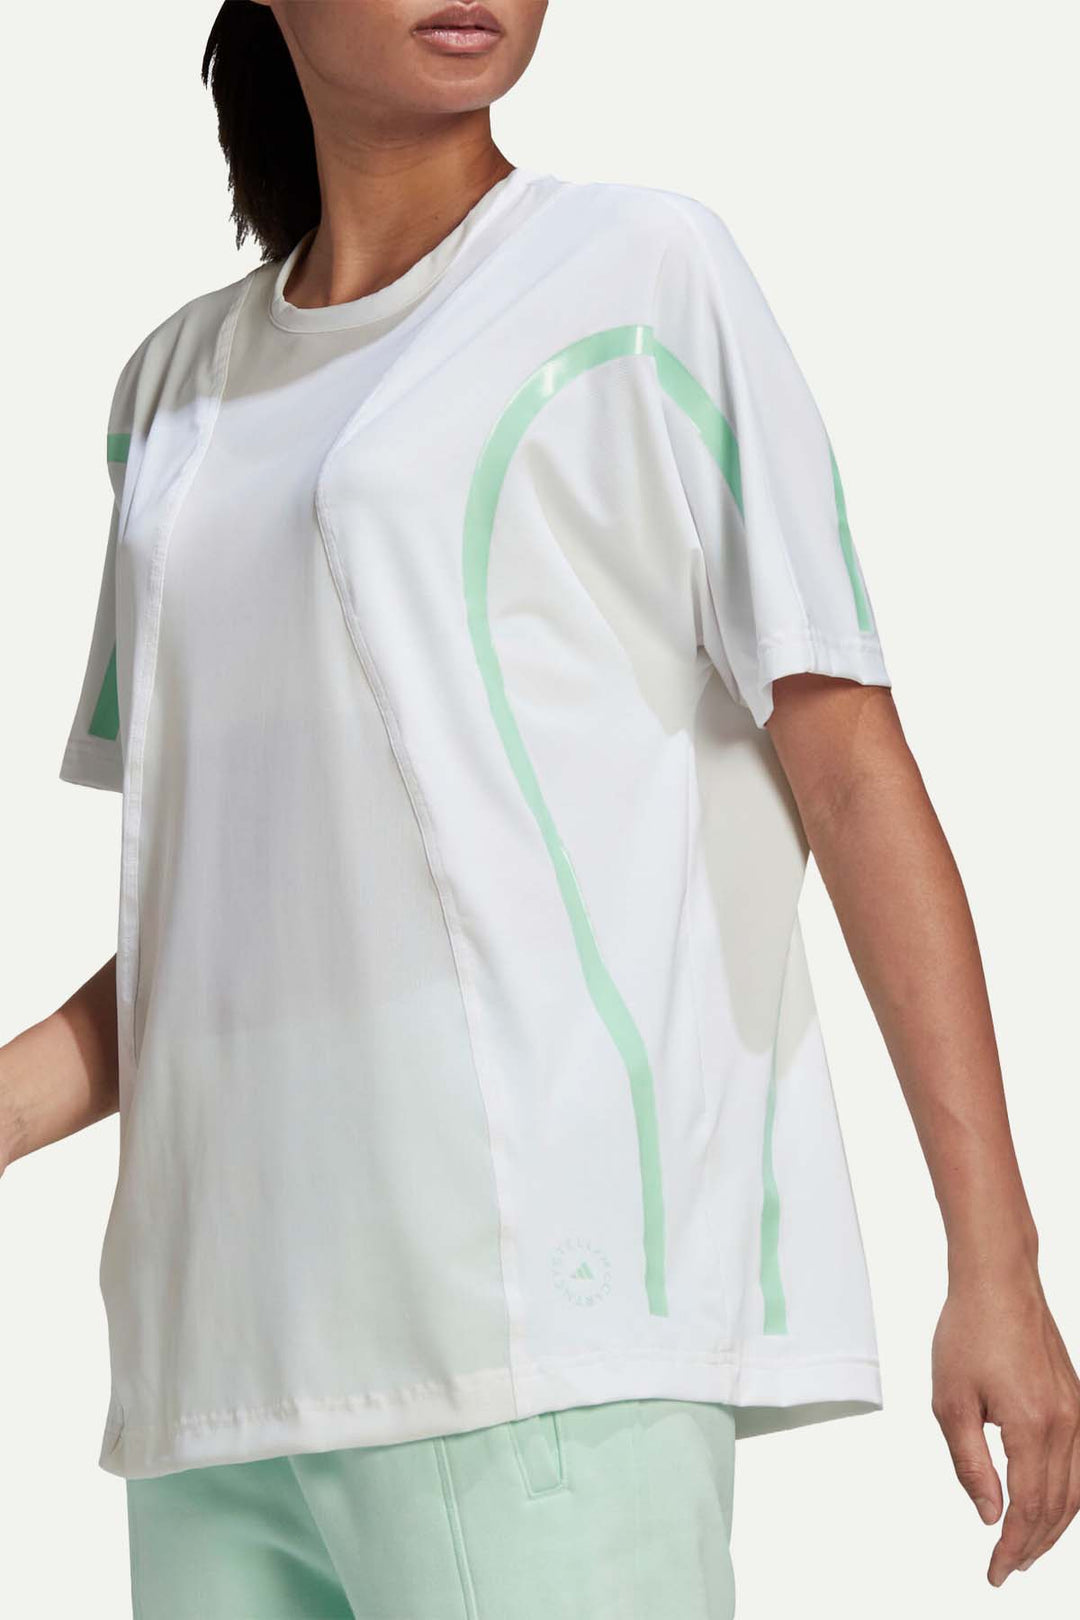 חולצת טי שירט שקפקפה בצבע לבן עם קווים אמורפיים - Adidas Stella